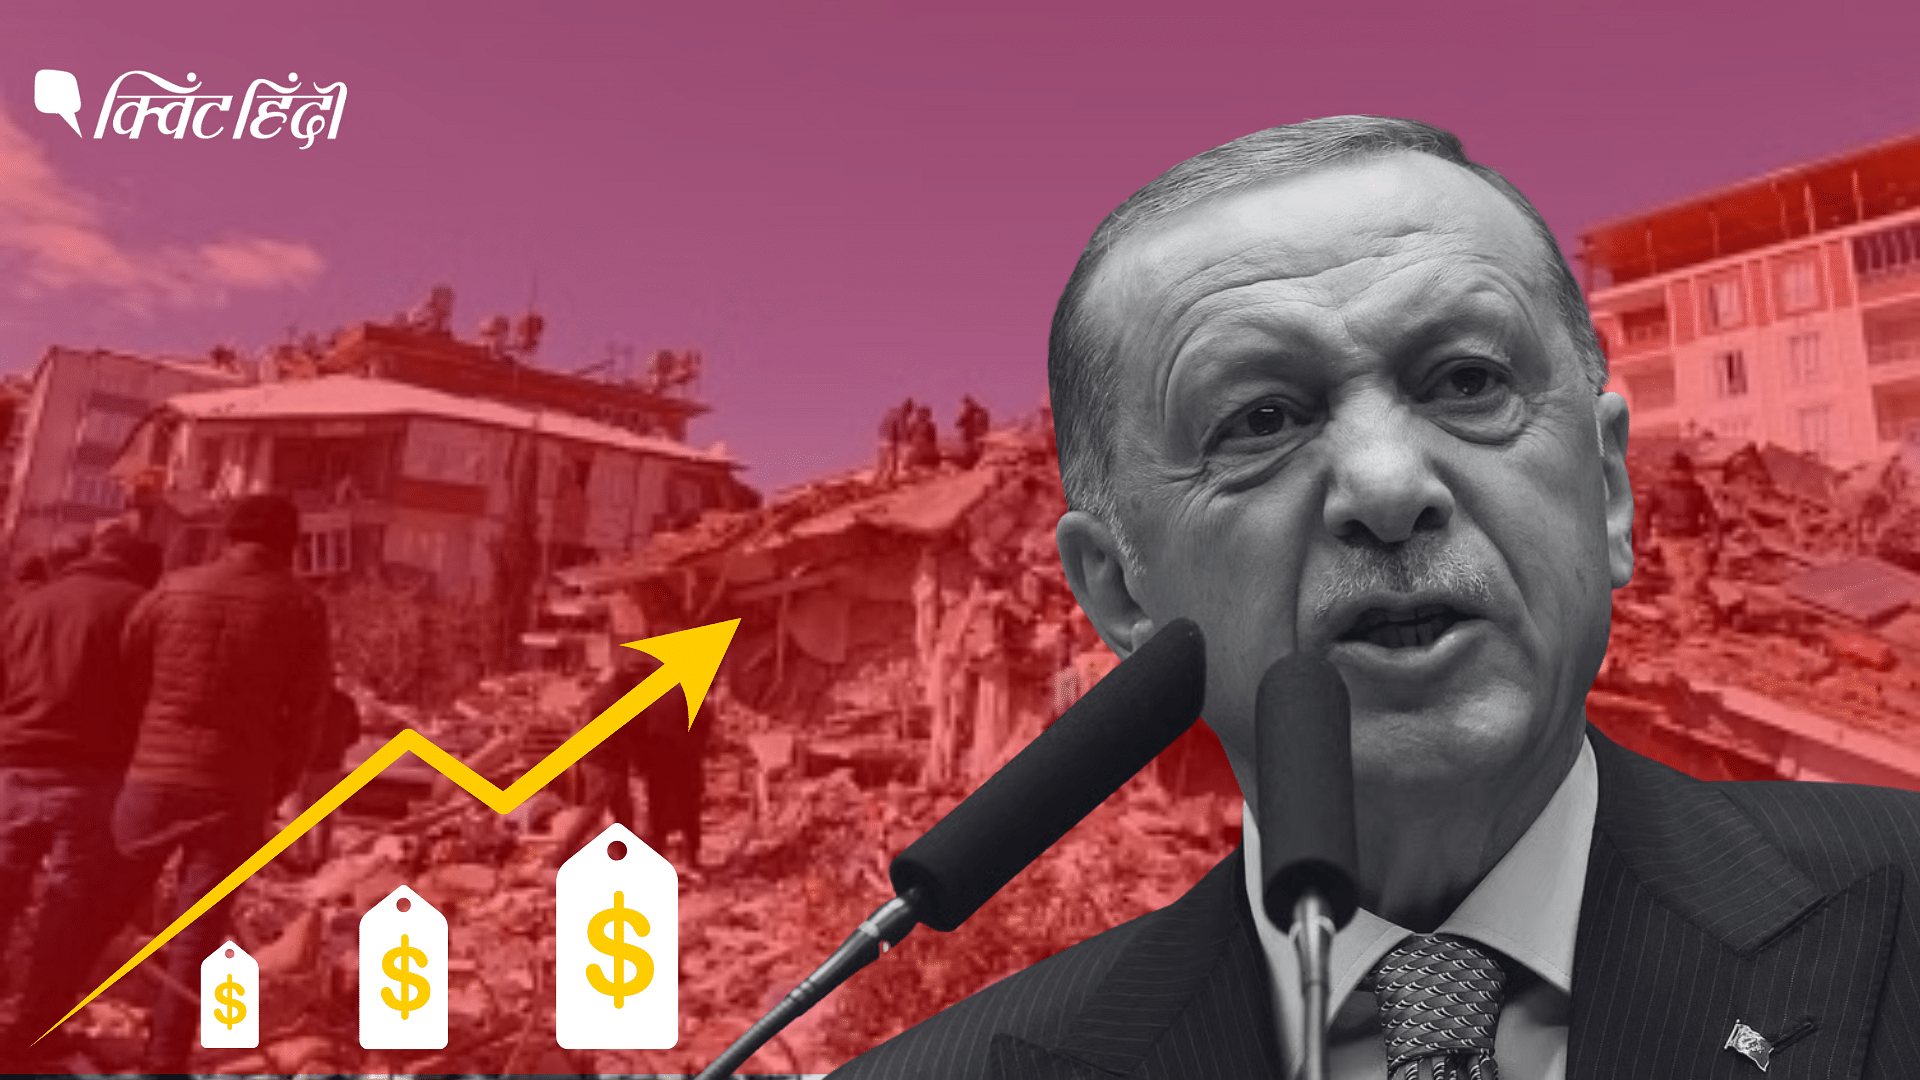 <div class="paragraphs"><p>Turkey: भूकंप,मंहगाई-फिर बनेगी एर्दोगान की सरकार या चुनाव में विपक्ष होगा कामयाब?</p></div>